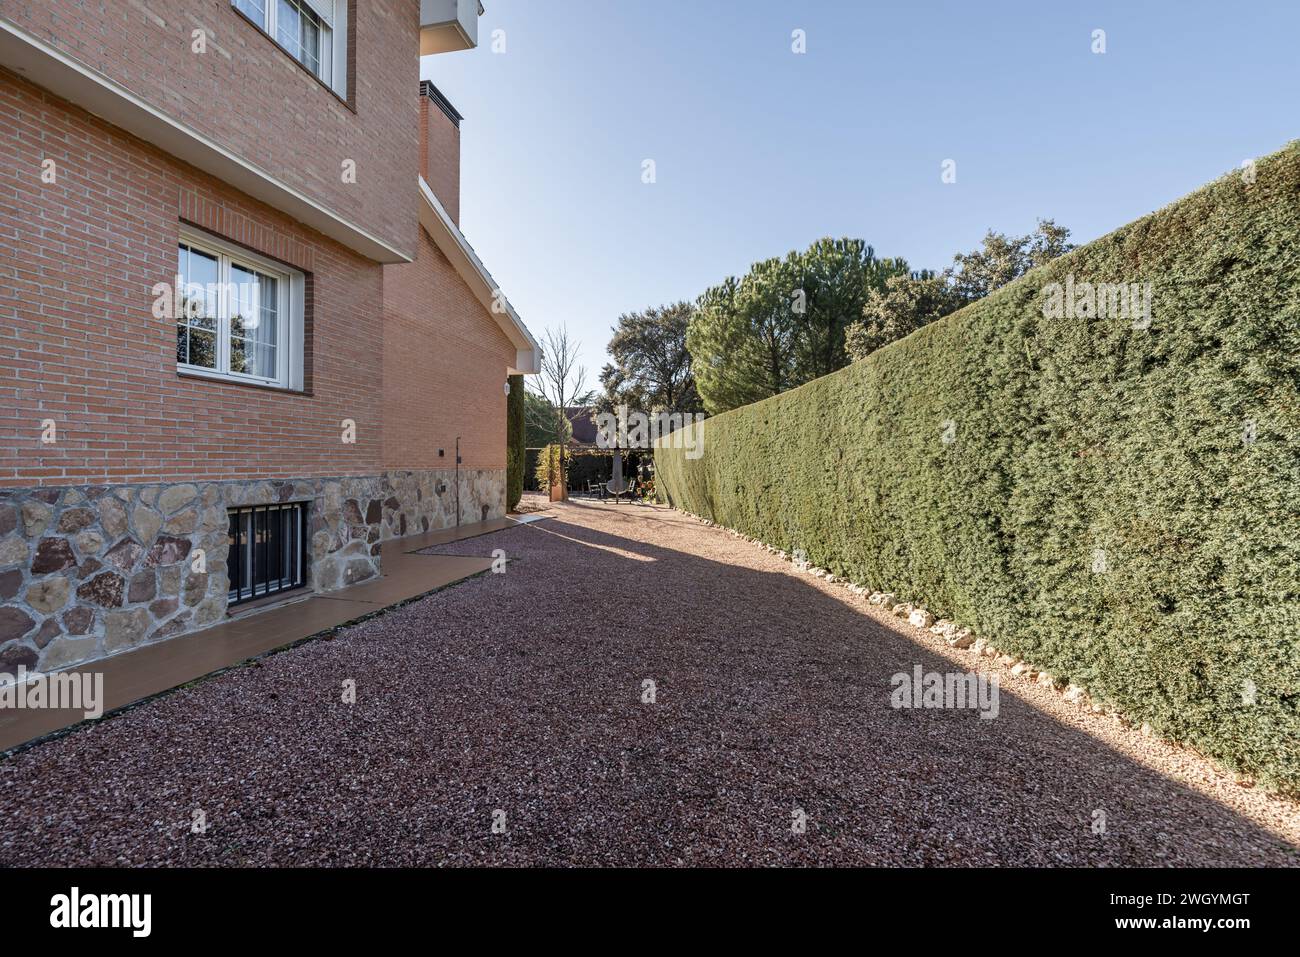 Ein Grundstück eines Hauses mit rötlichem Kies und Bäumen neben einem Schuppen Stockfoto